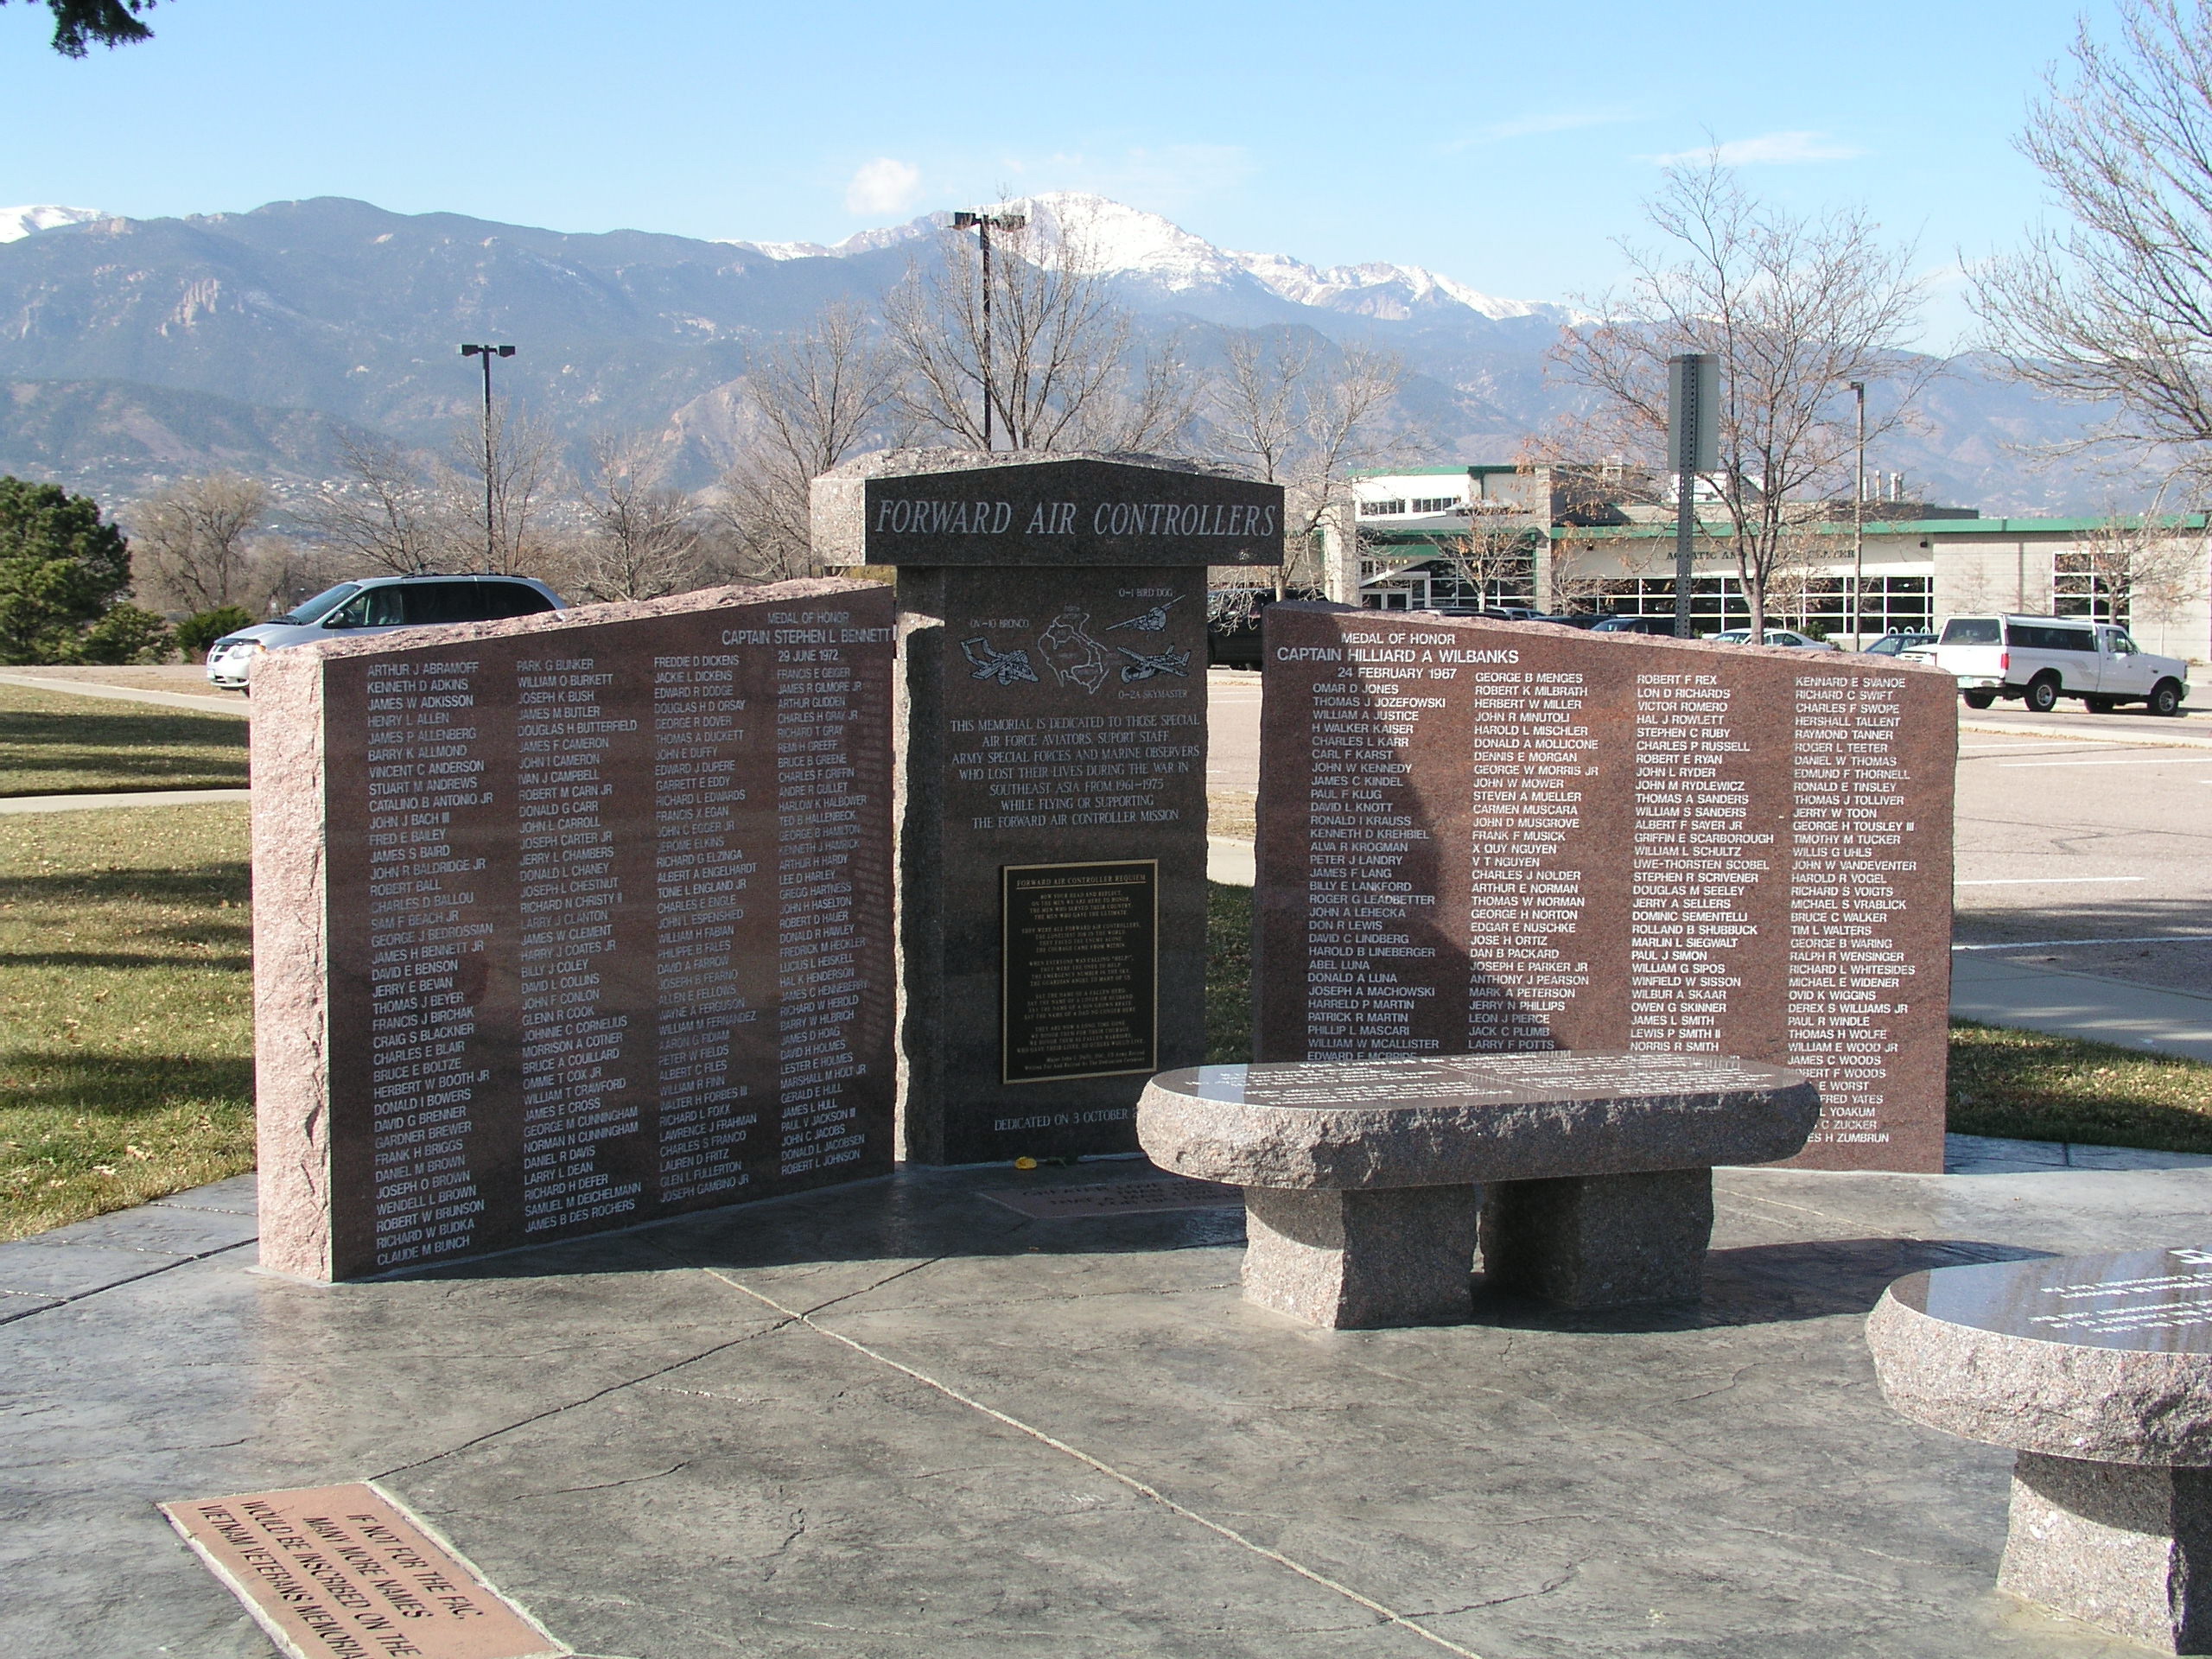 Forward Air Controller's Memorial Monument, Colorado Springs, Colorado
DOUBLE CLICK to ENLARGE